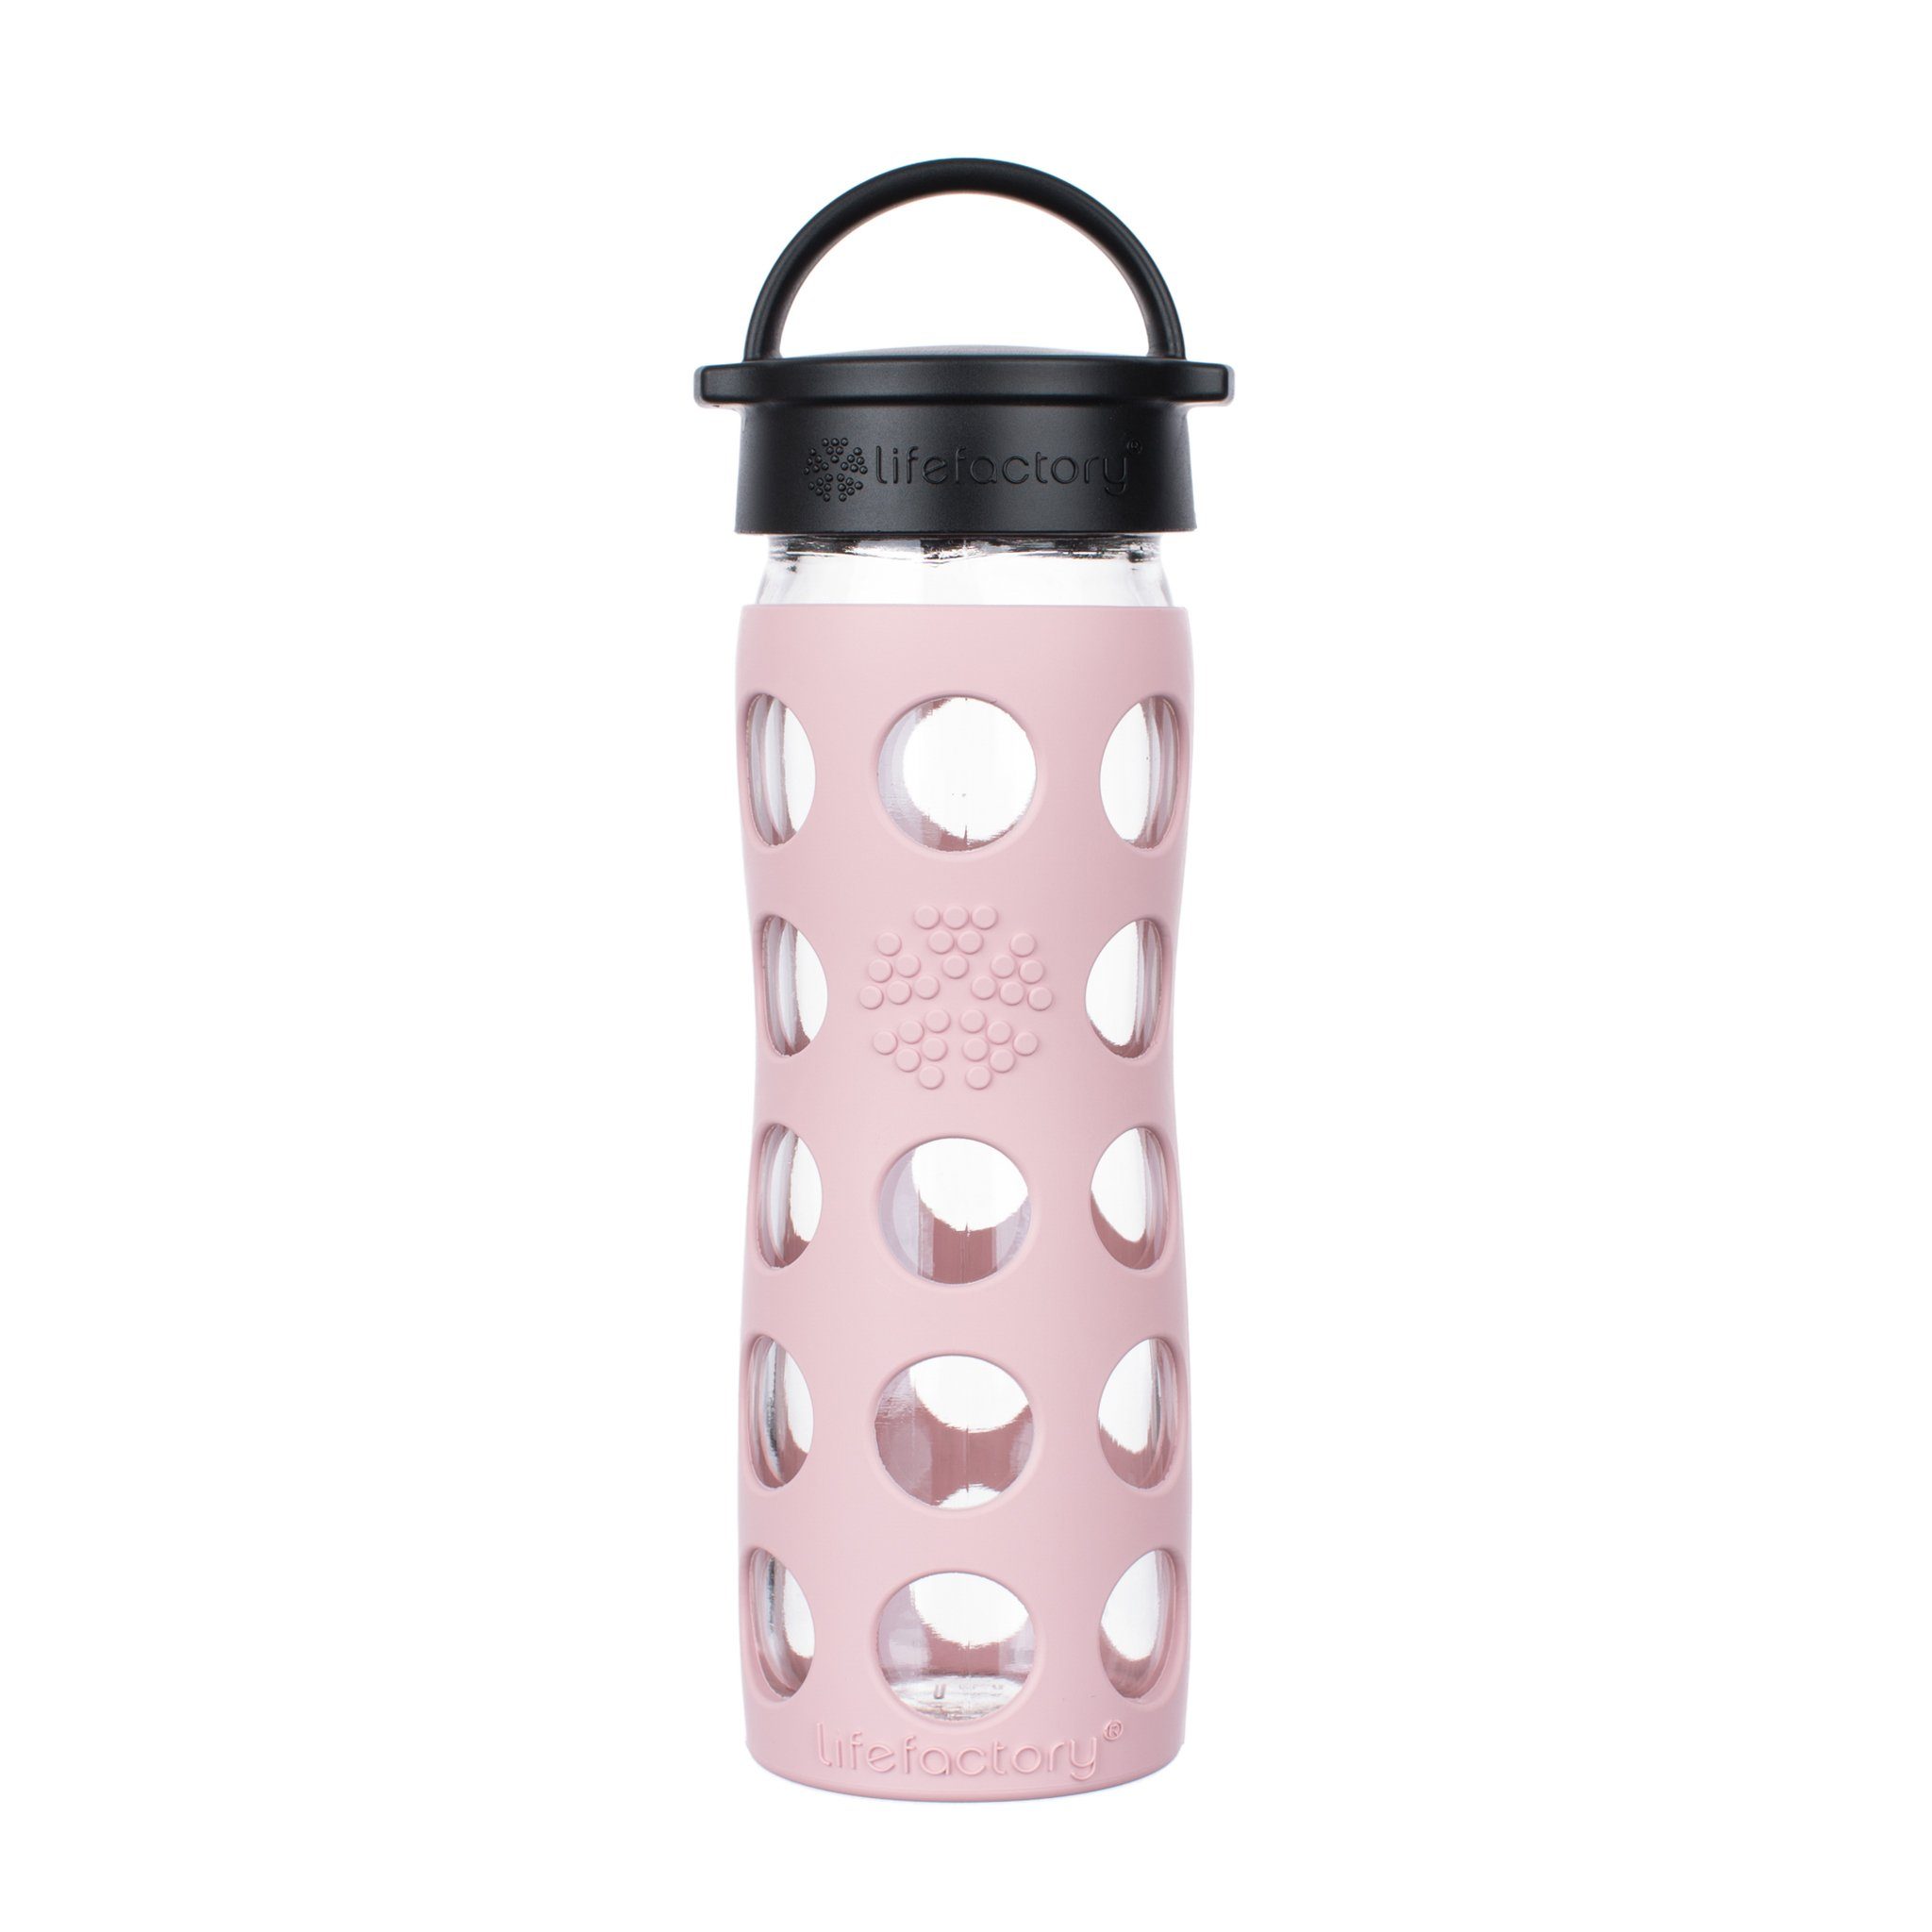 Lifefactory Babyflasche, Lifefactory Glas Flasche mit Silikonhülle und Schraubverschluss, 475ml Desert Rose